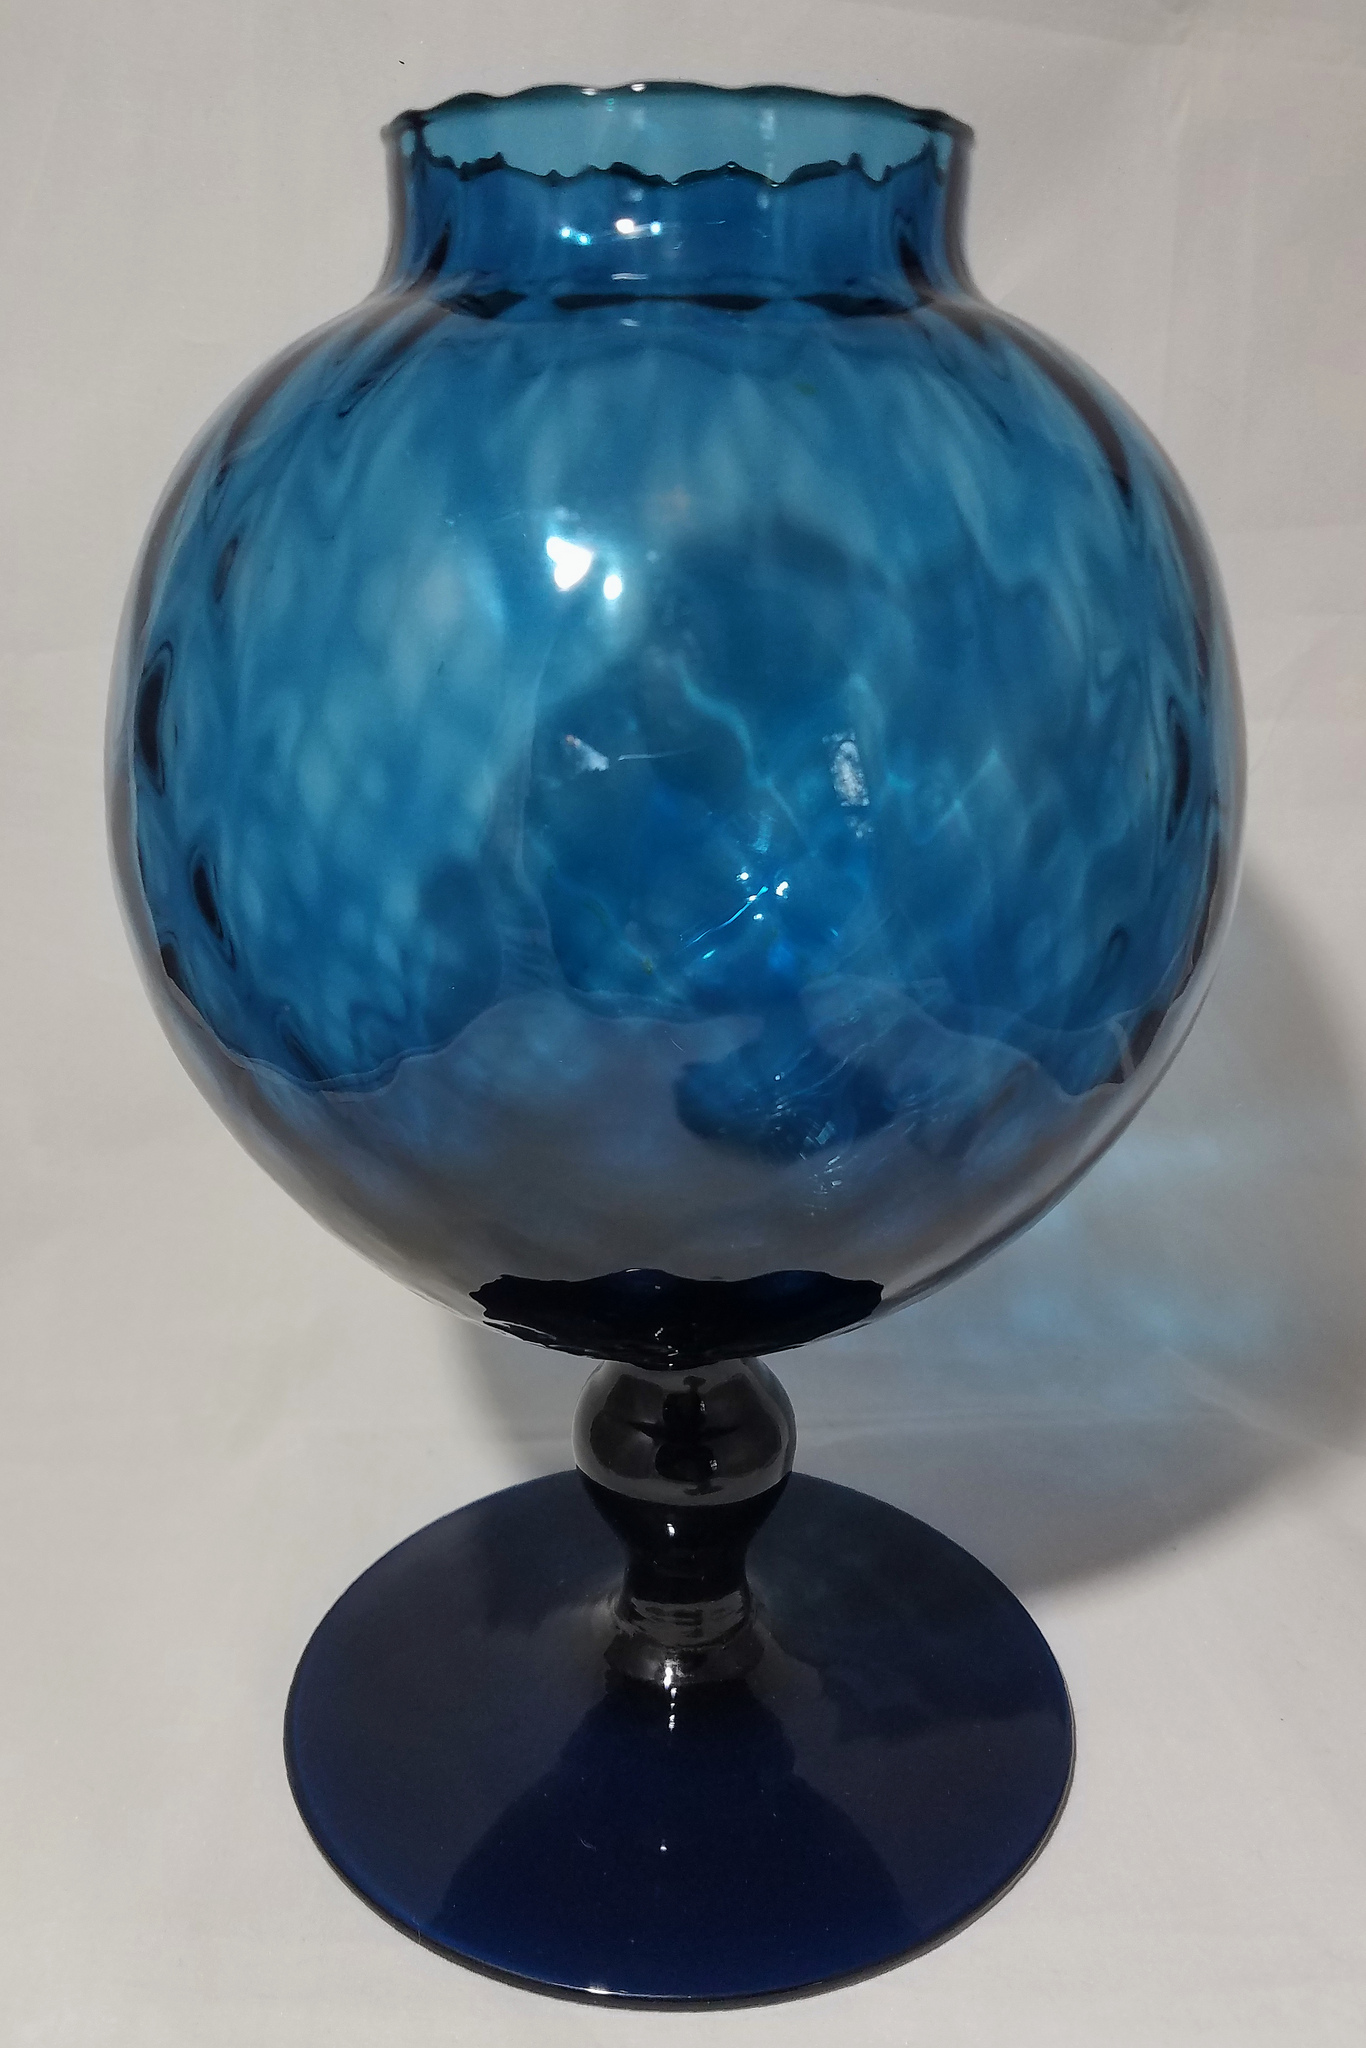 Blue ivy ball vase / bowl - maker? | Antiques Board